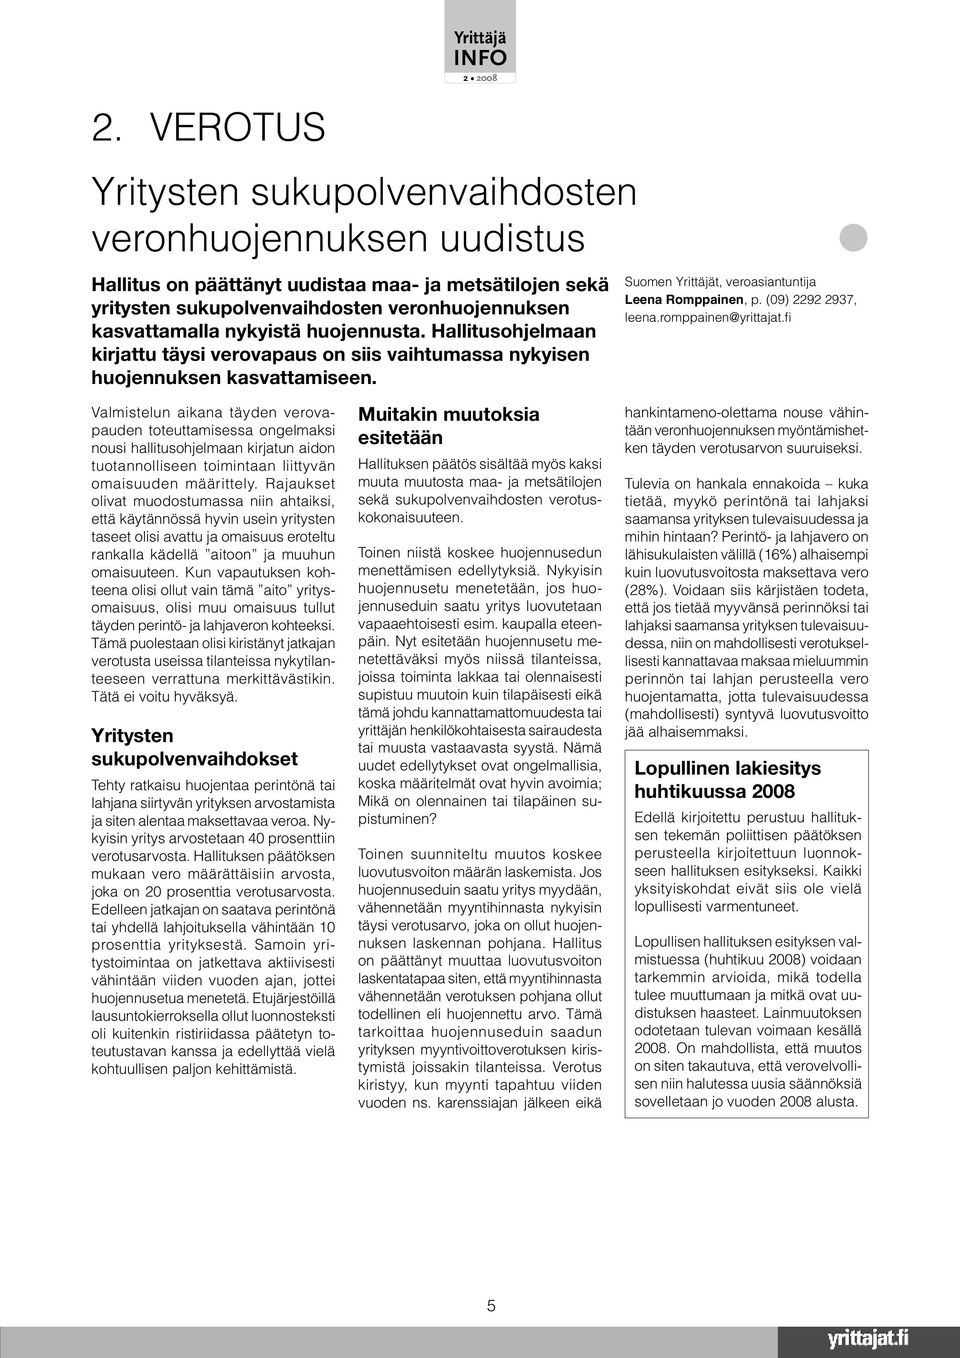 romppainen@yrittajat.fi Valmistelun aikana täyden verovapauden toteuttamisessa ongelmaksi nousi hallitusohjelmaan kirjatun aidon tuotannolliseen toimintaan liittyvän omaisuuden määrittely.